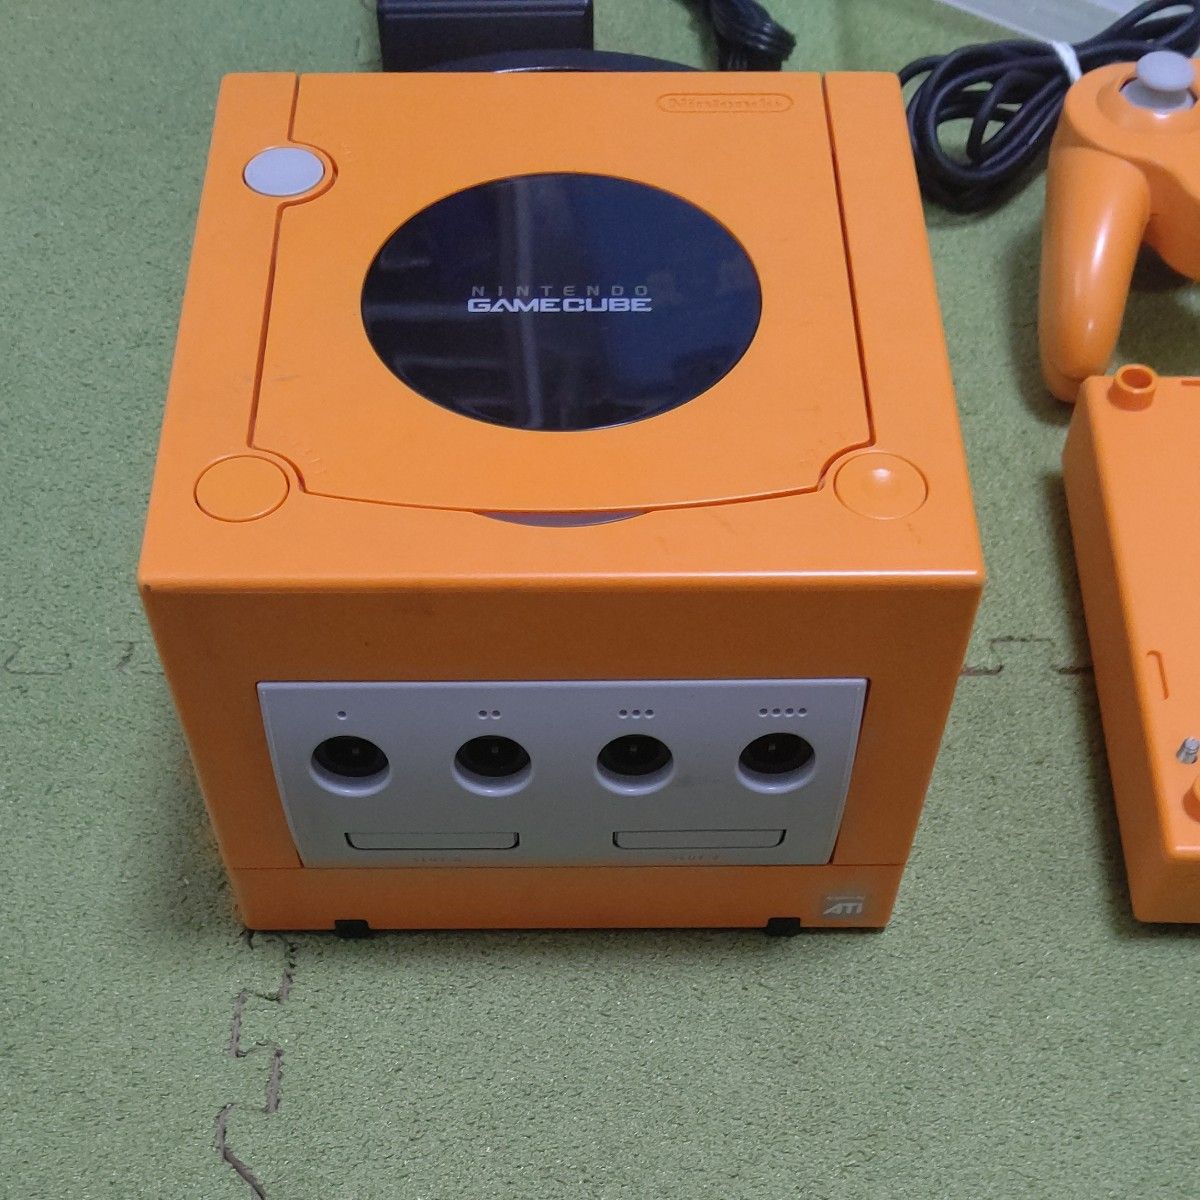 【動作確認済】 ゲームキューブ 本体 オレンジ ゲームボーイプレイヤー NintendoGAMECUBE GAMEBOY